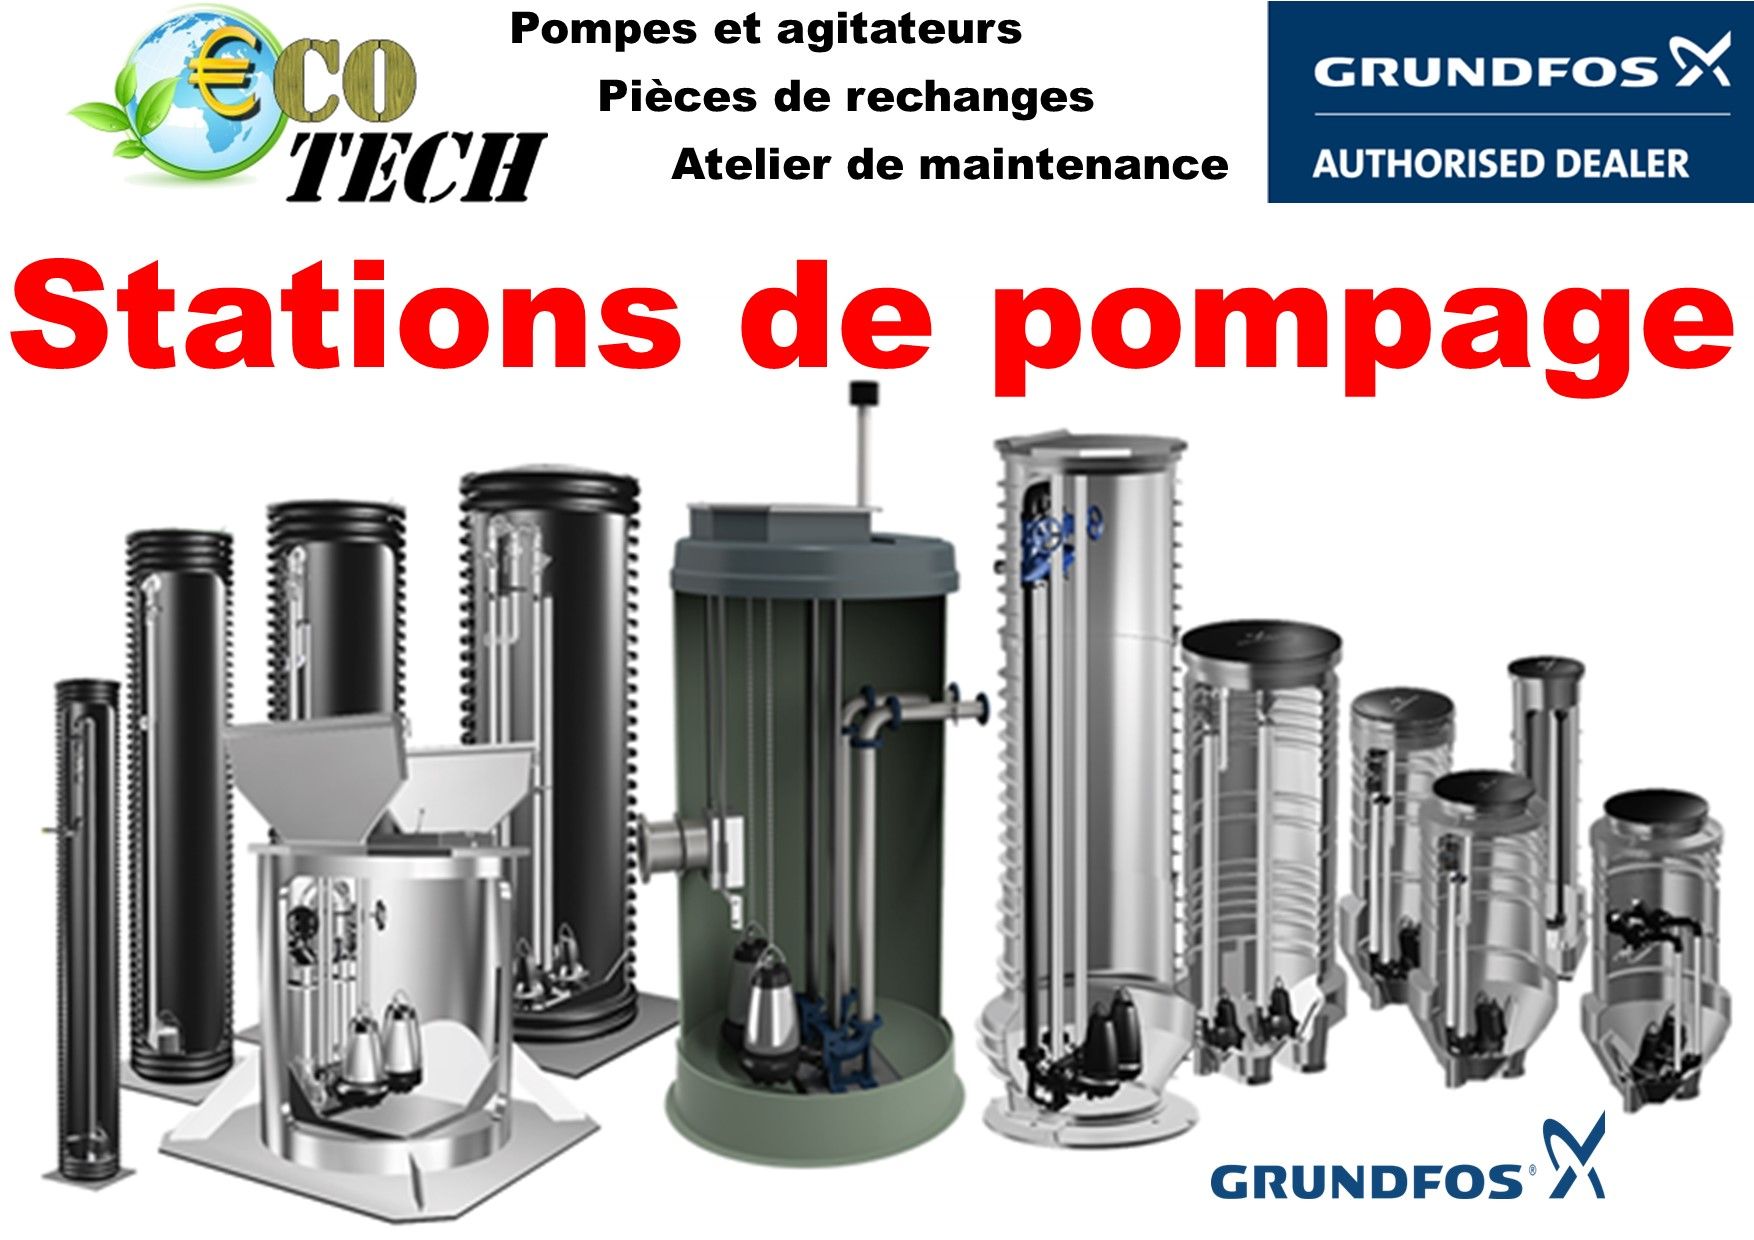 Stations de pompage grundfos distribué par eco-tech pompe normandie bretagne_0